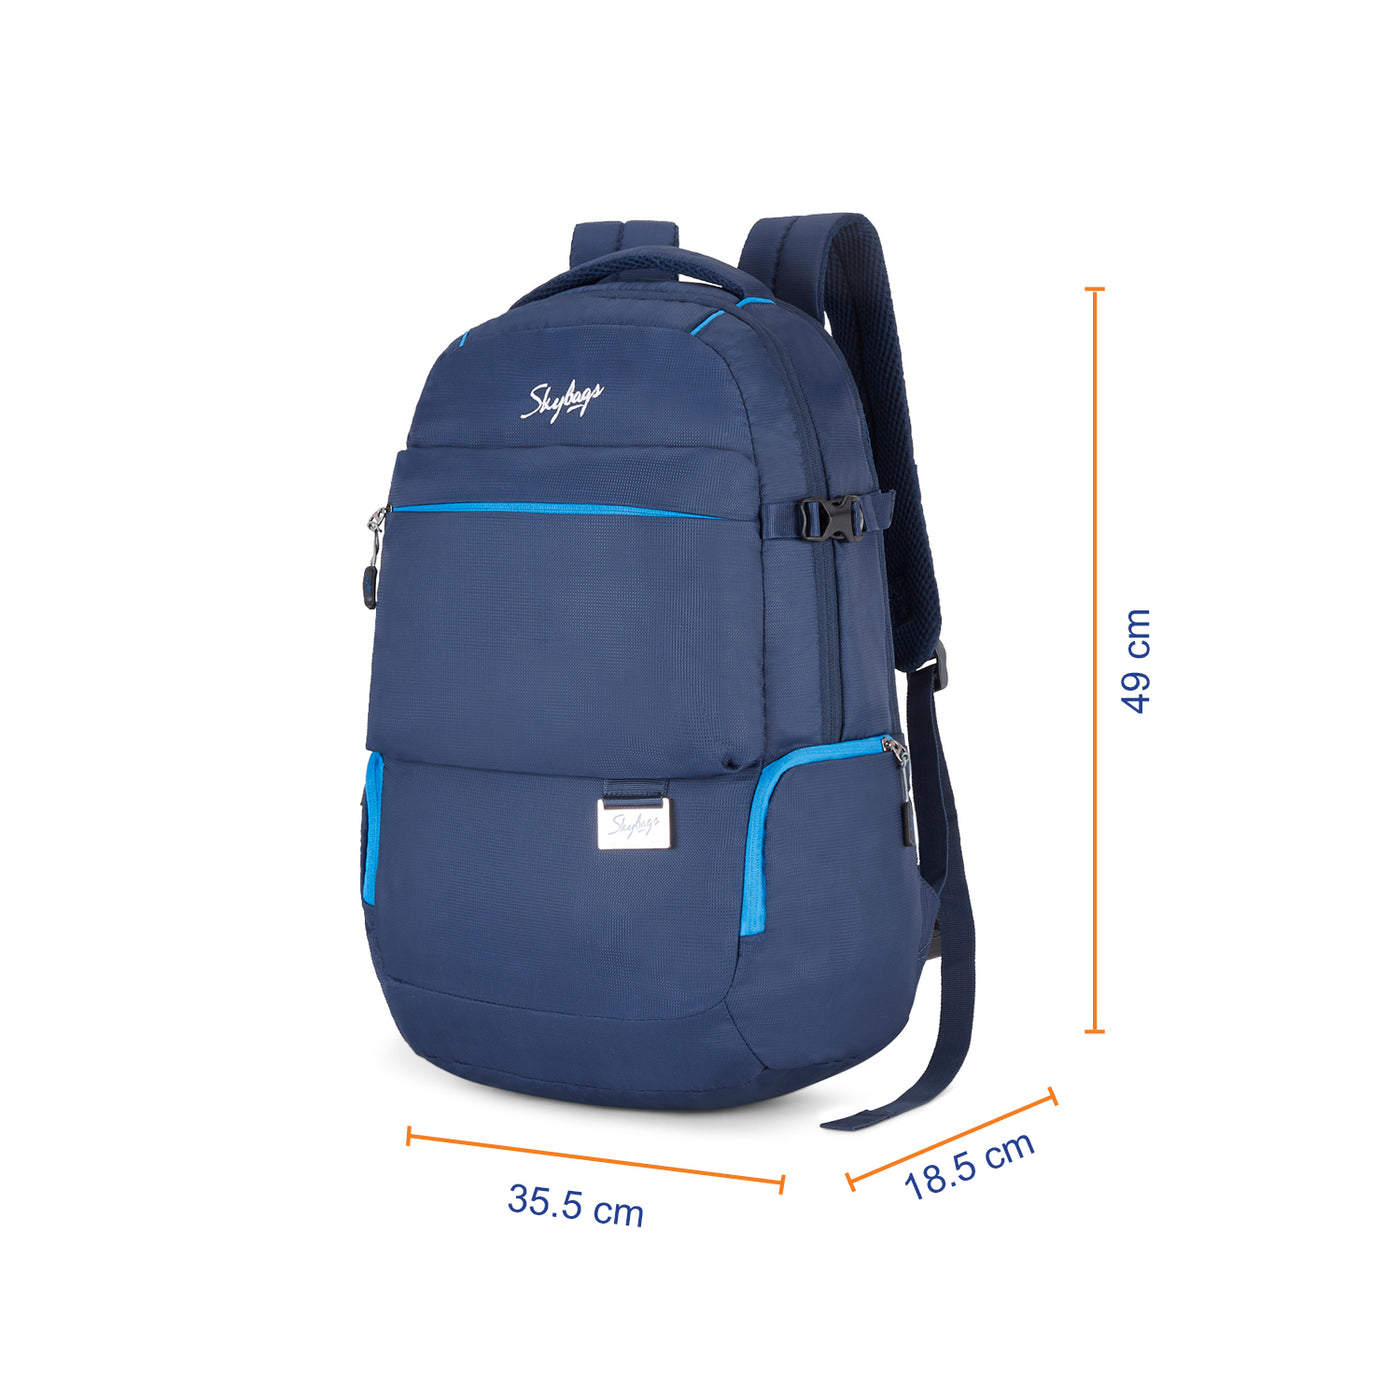 Laptop Skybags Backpacks - Buy Laptop Skybags Backpacks online in India